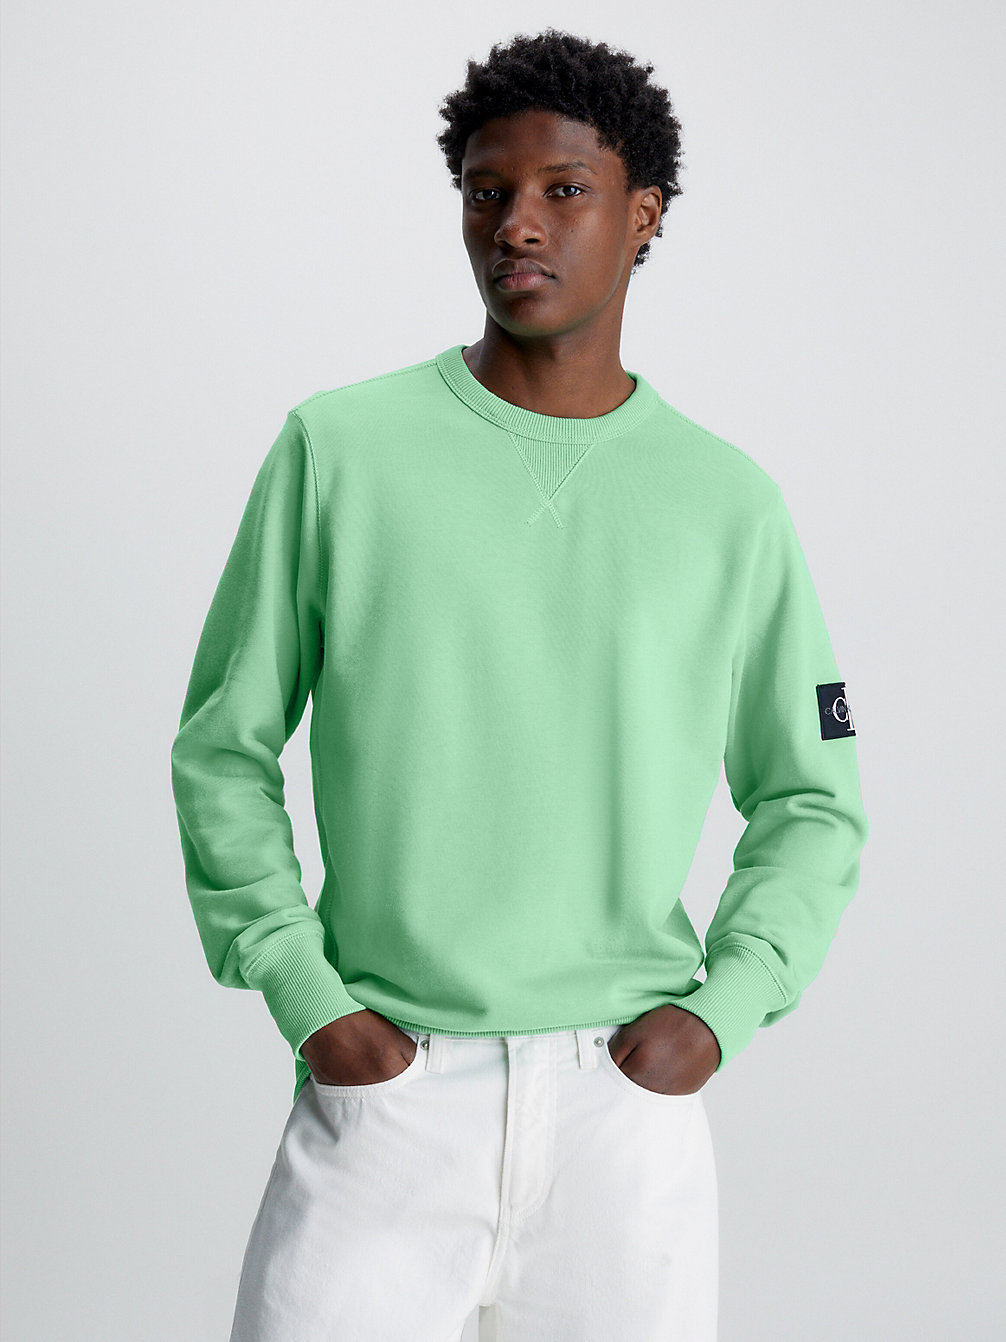 NEPTUNES WAVE Sweat-Shirt Avec Insigne Monogramme undefined hommes Calvin Klein